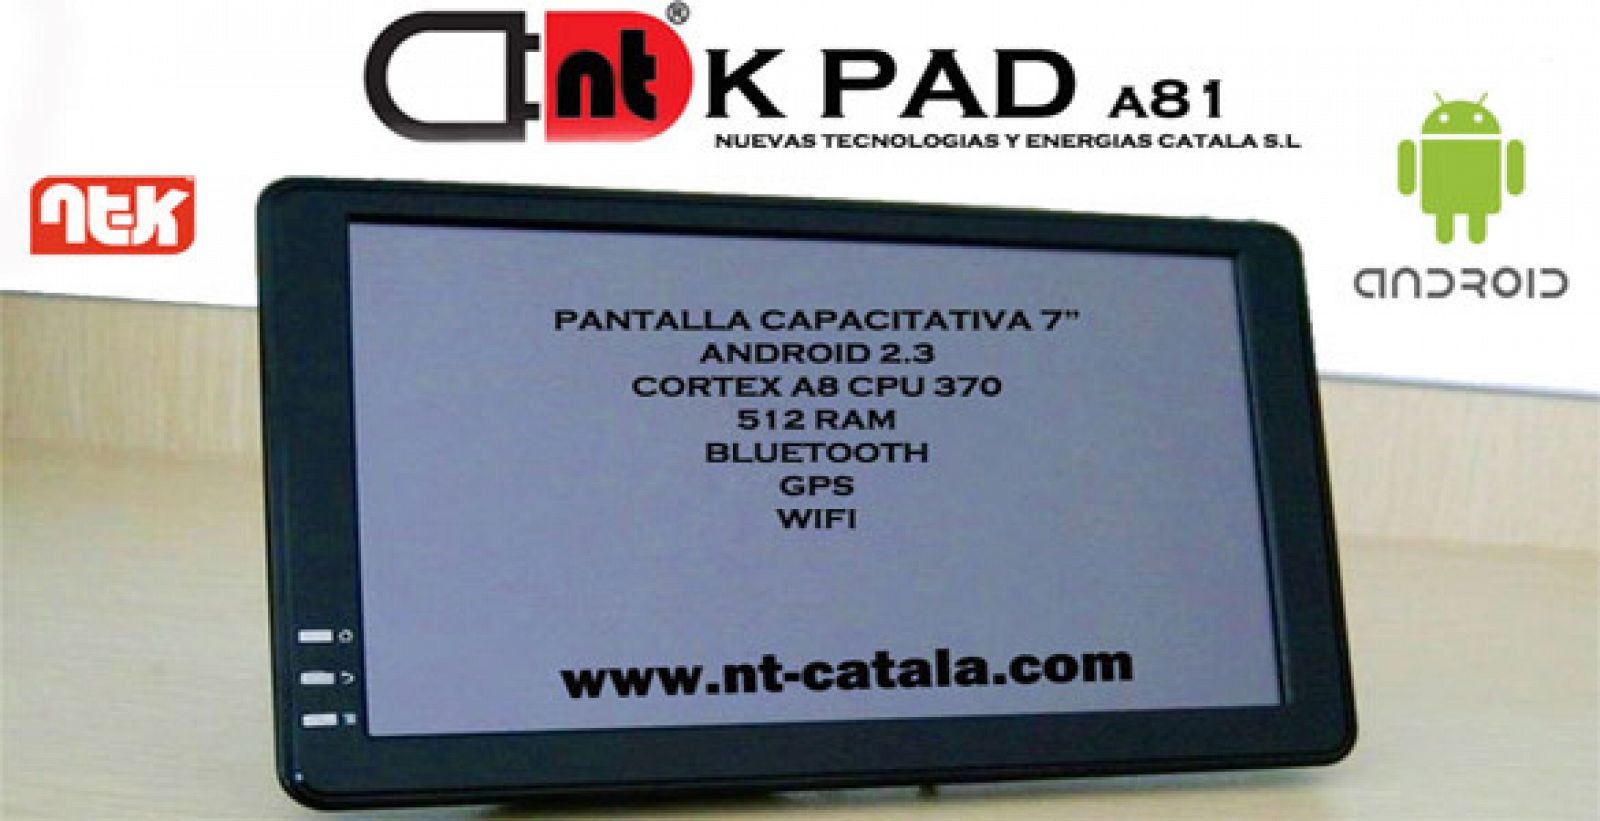 La empresa valenciana alega que sus 'tablets' no tienen nada que ver con el iPad de Apple